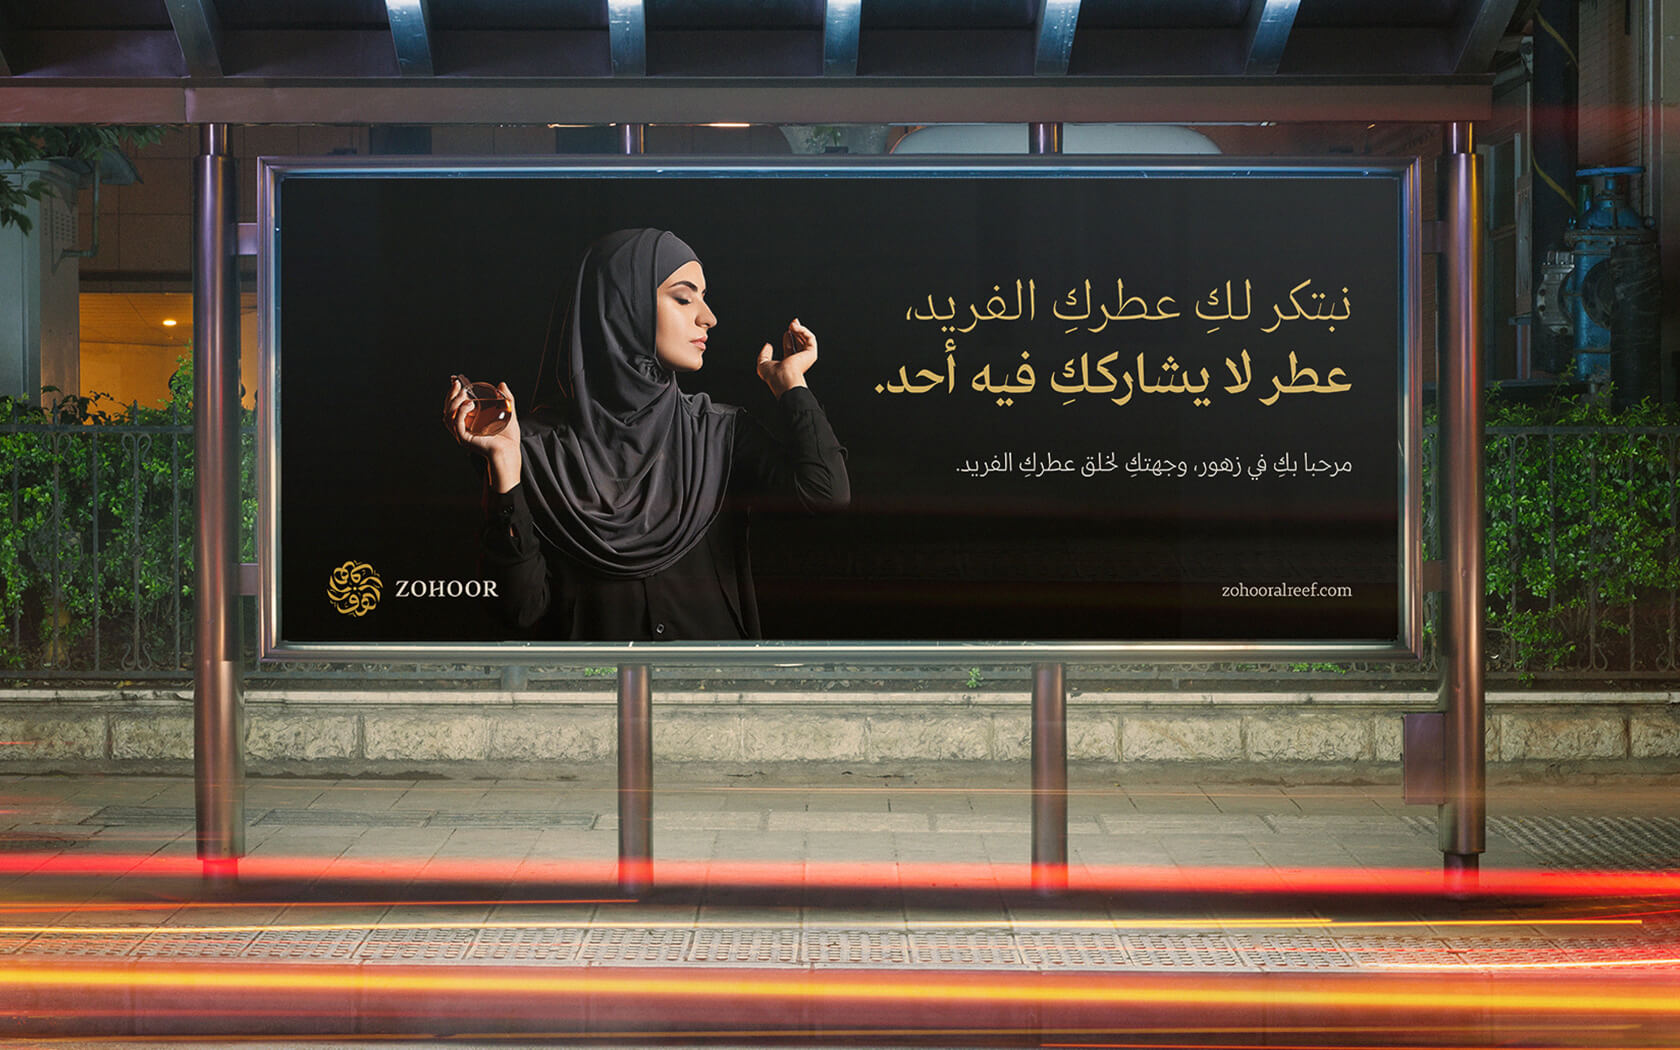 Zohoor. Billboard example in Arabic